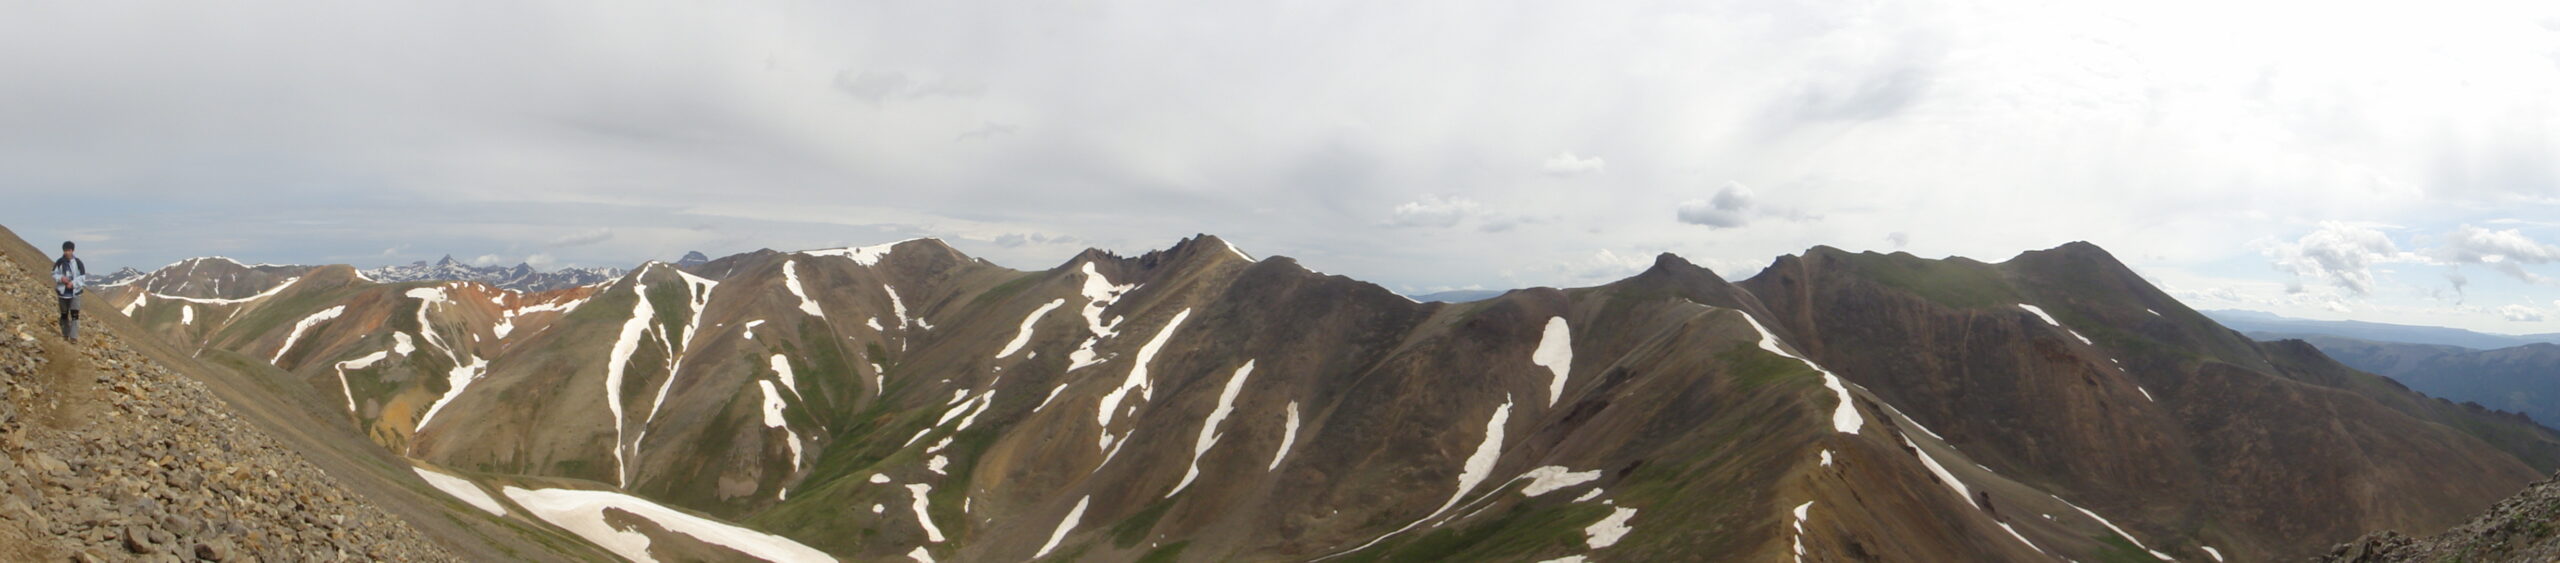 A mountain range, photo taken at a distance.